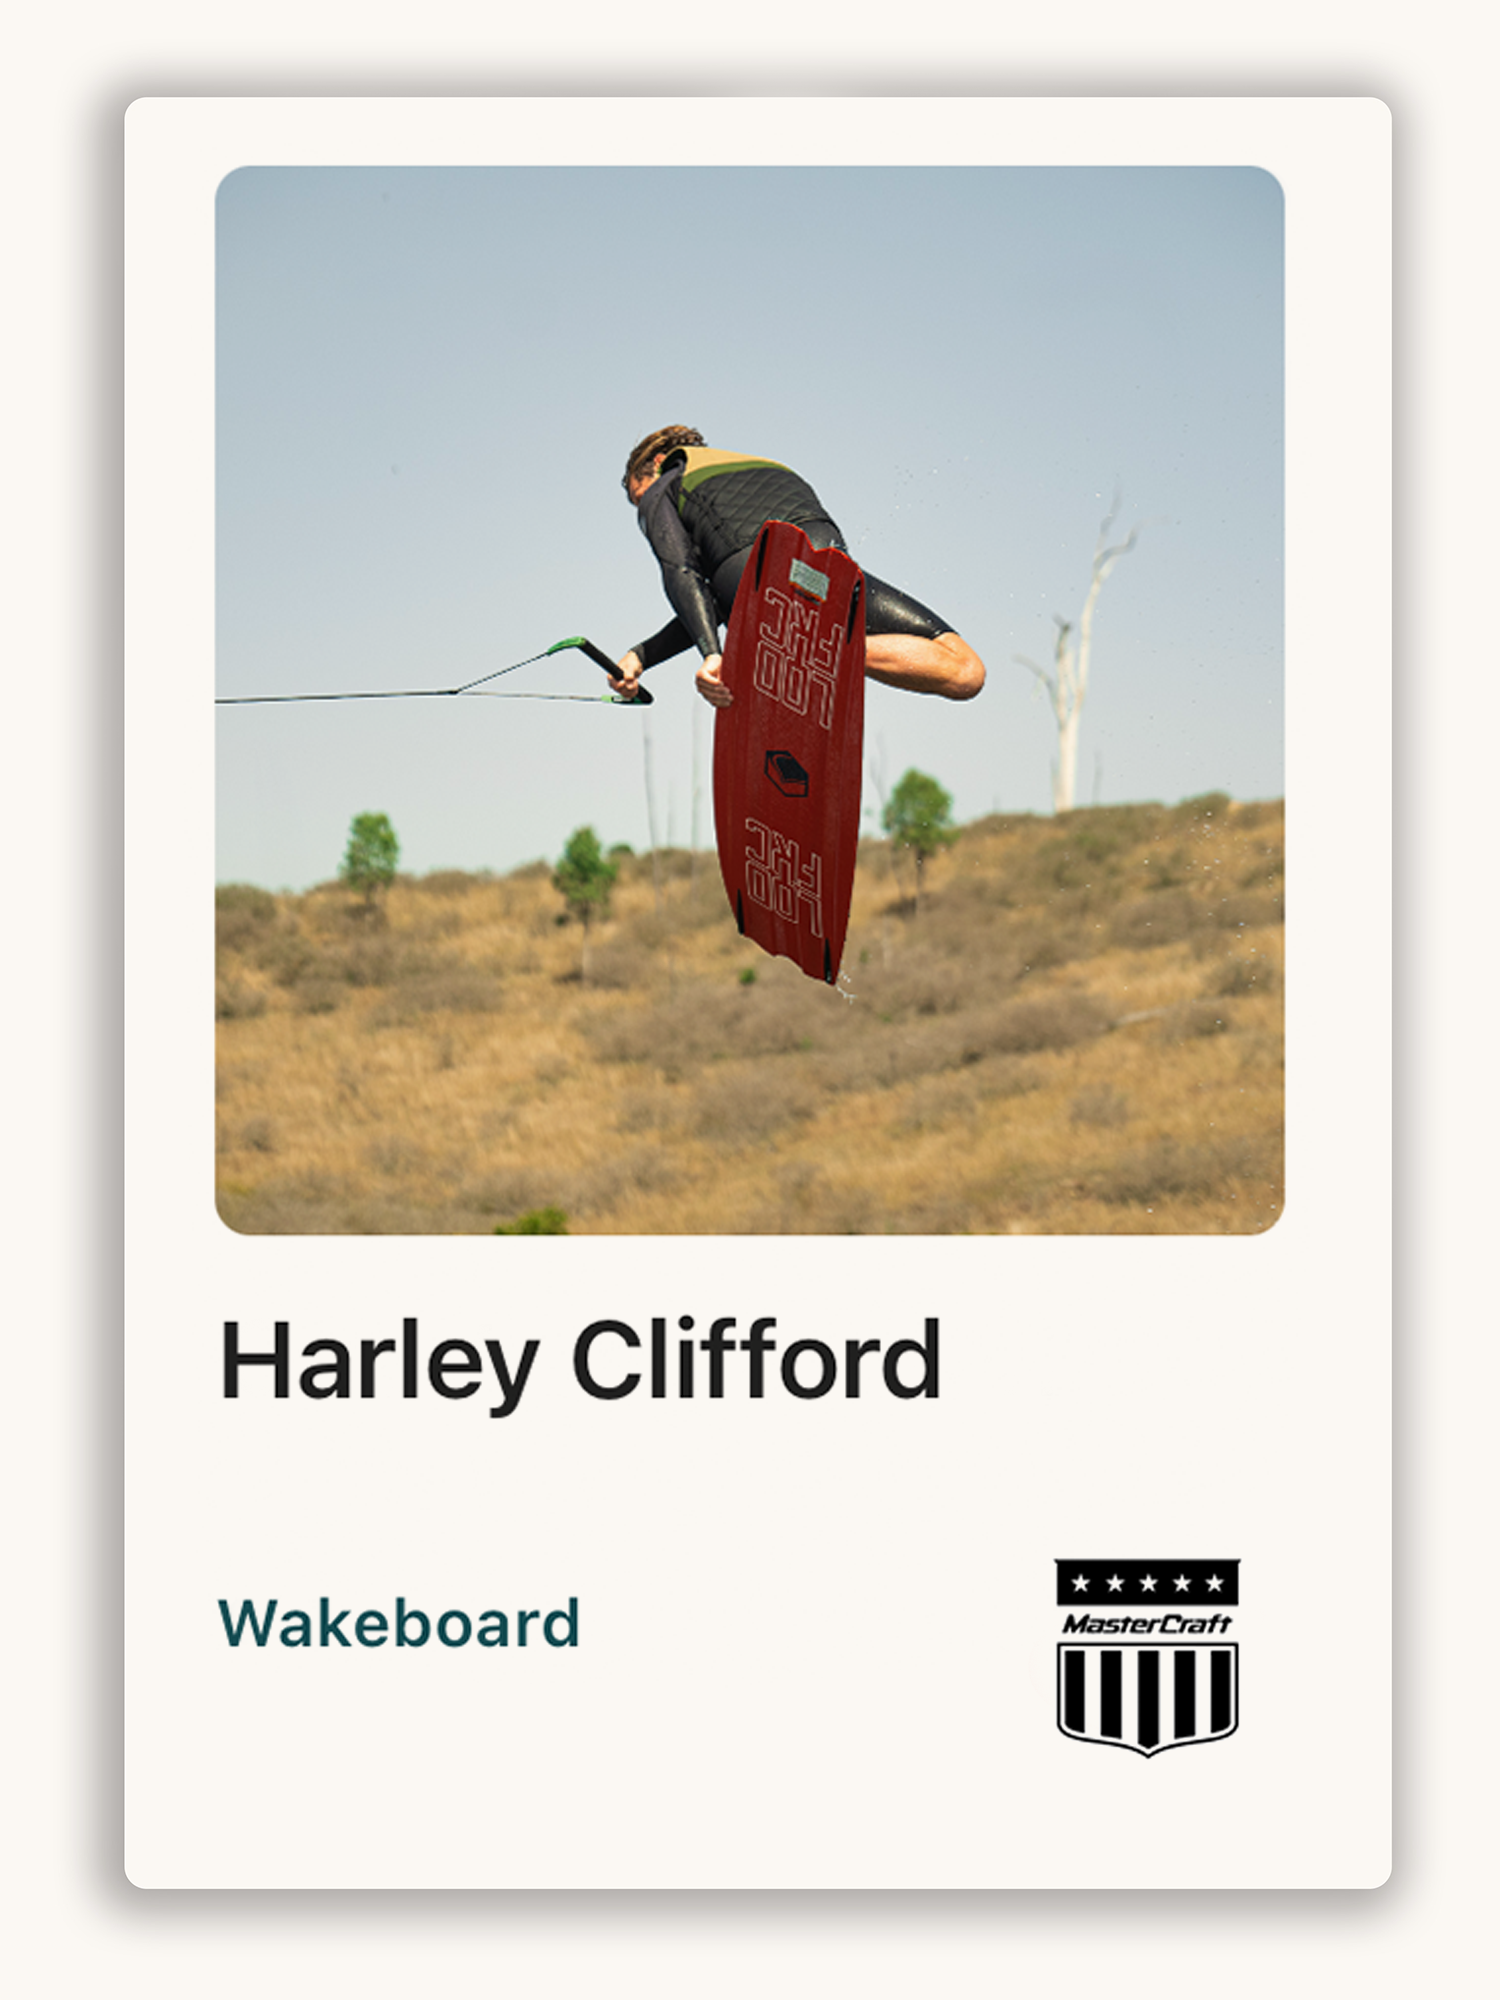 Harley Clifford